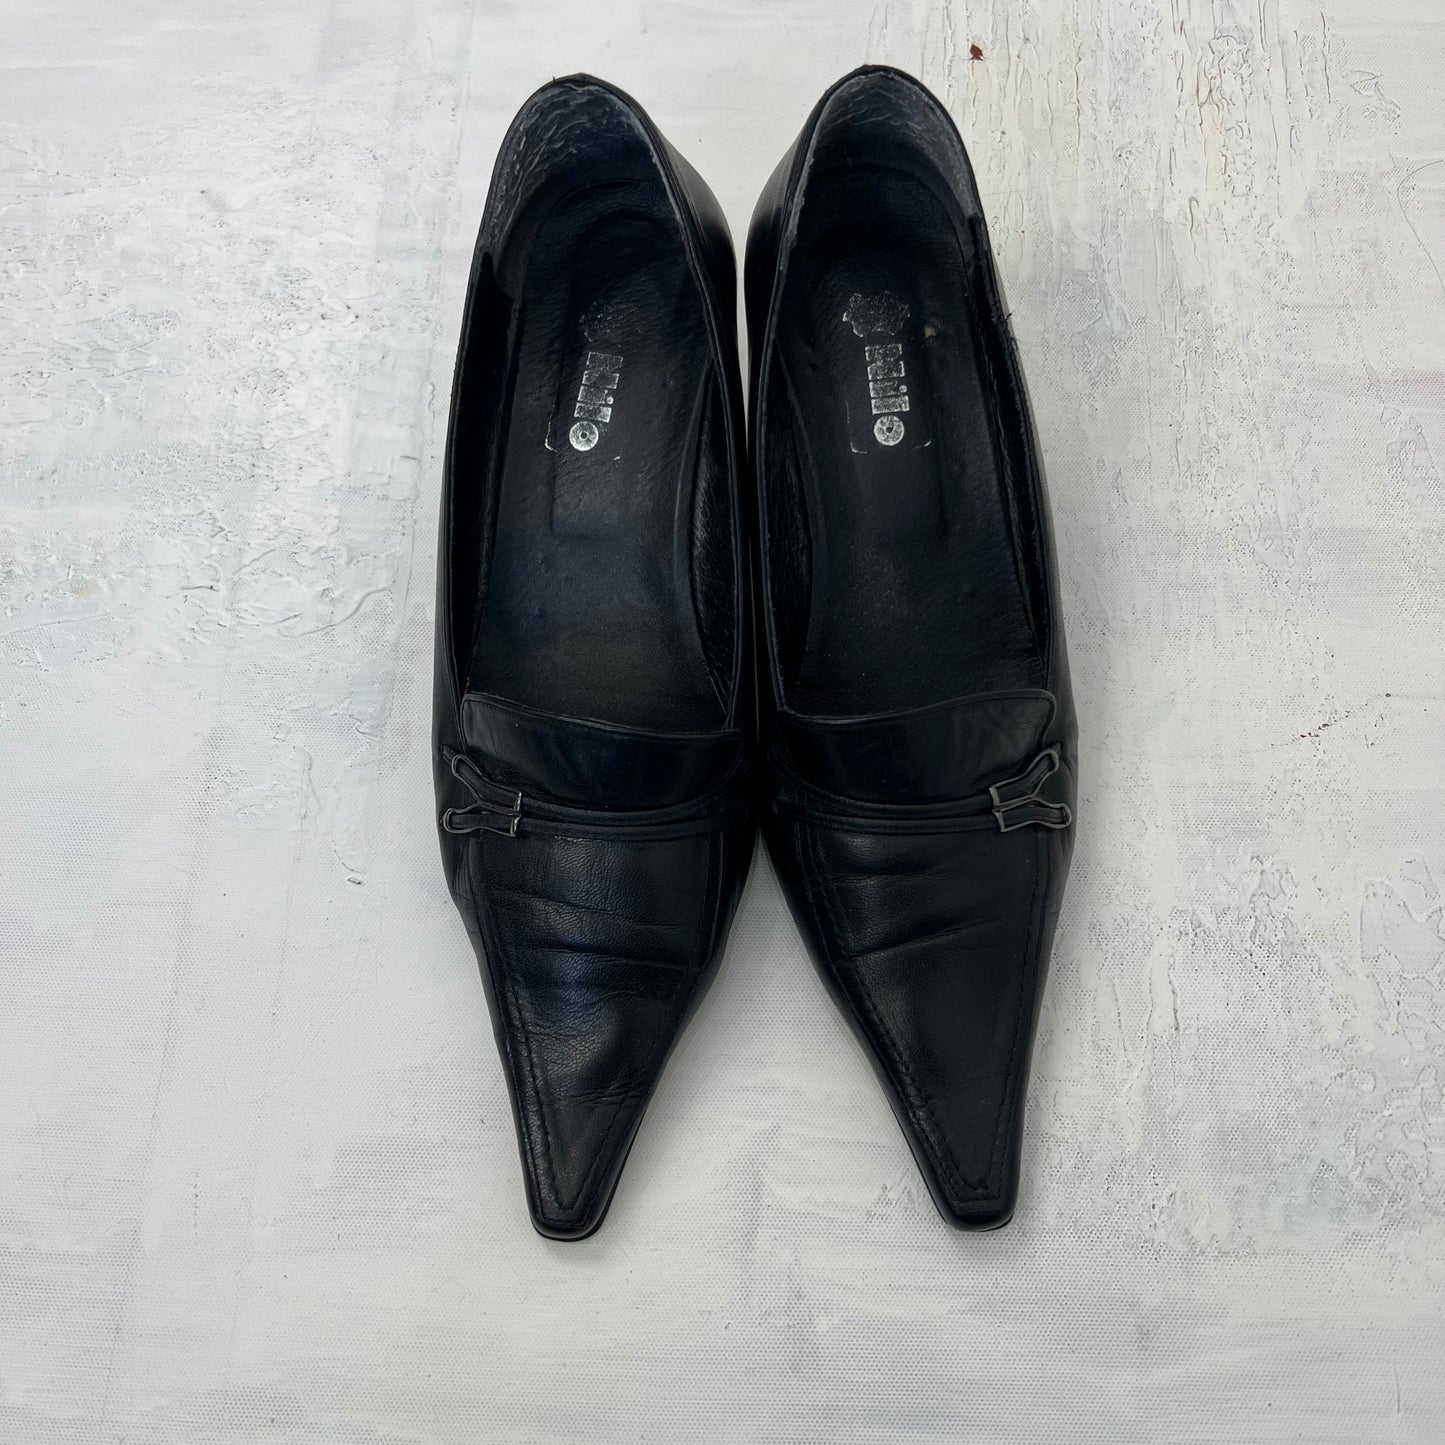 CARRIE BRADSHAW DROP | black leather kitten heel shoes